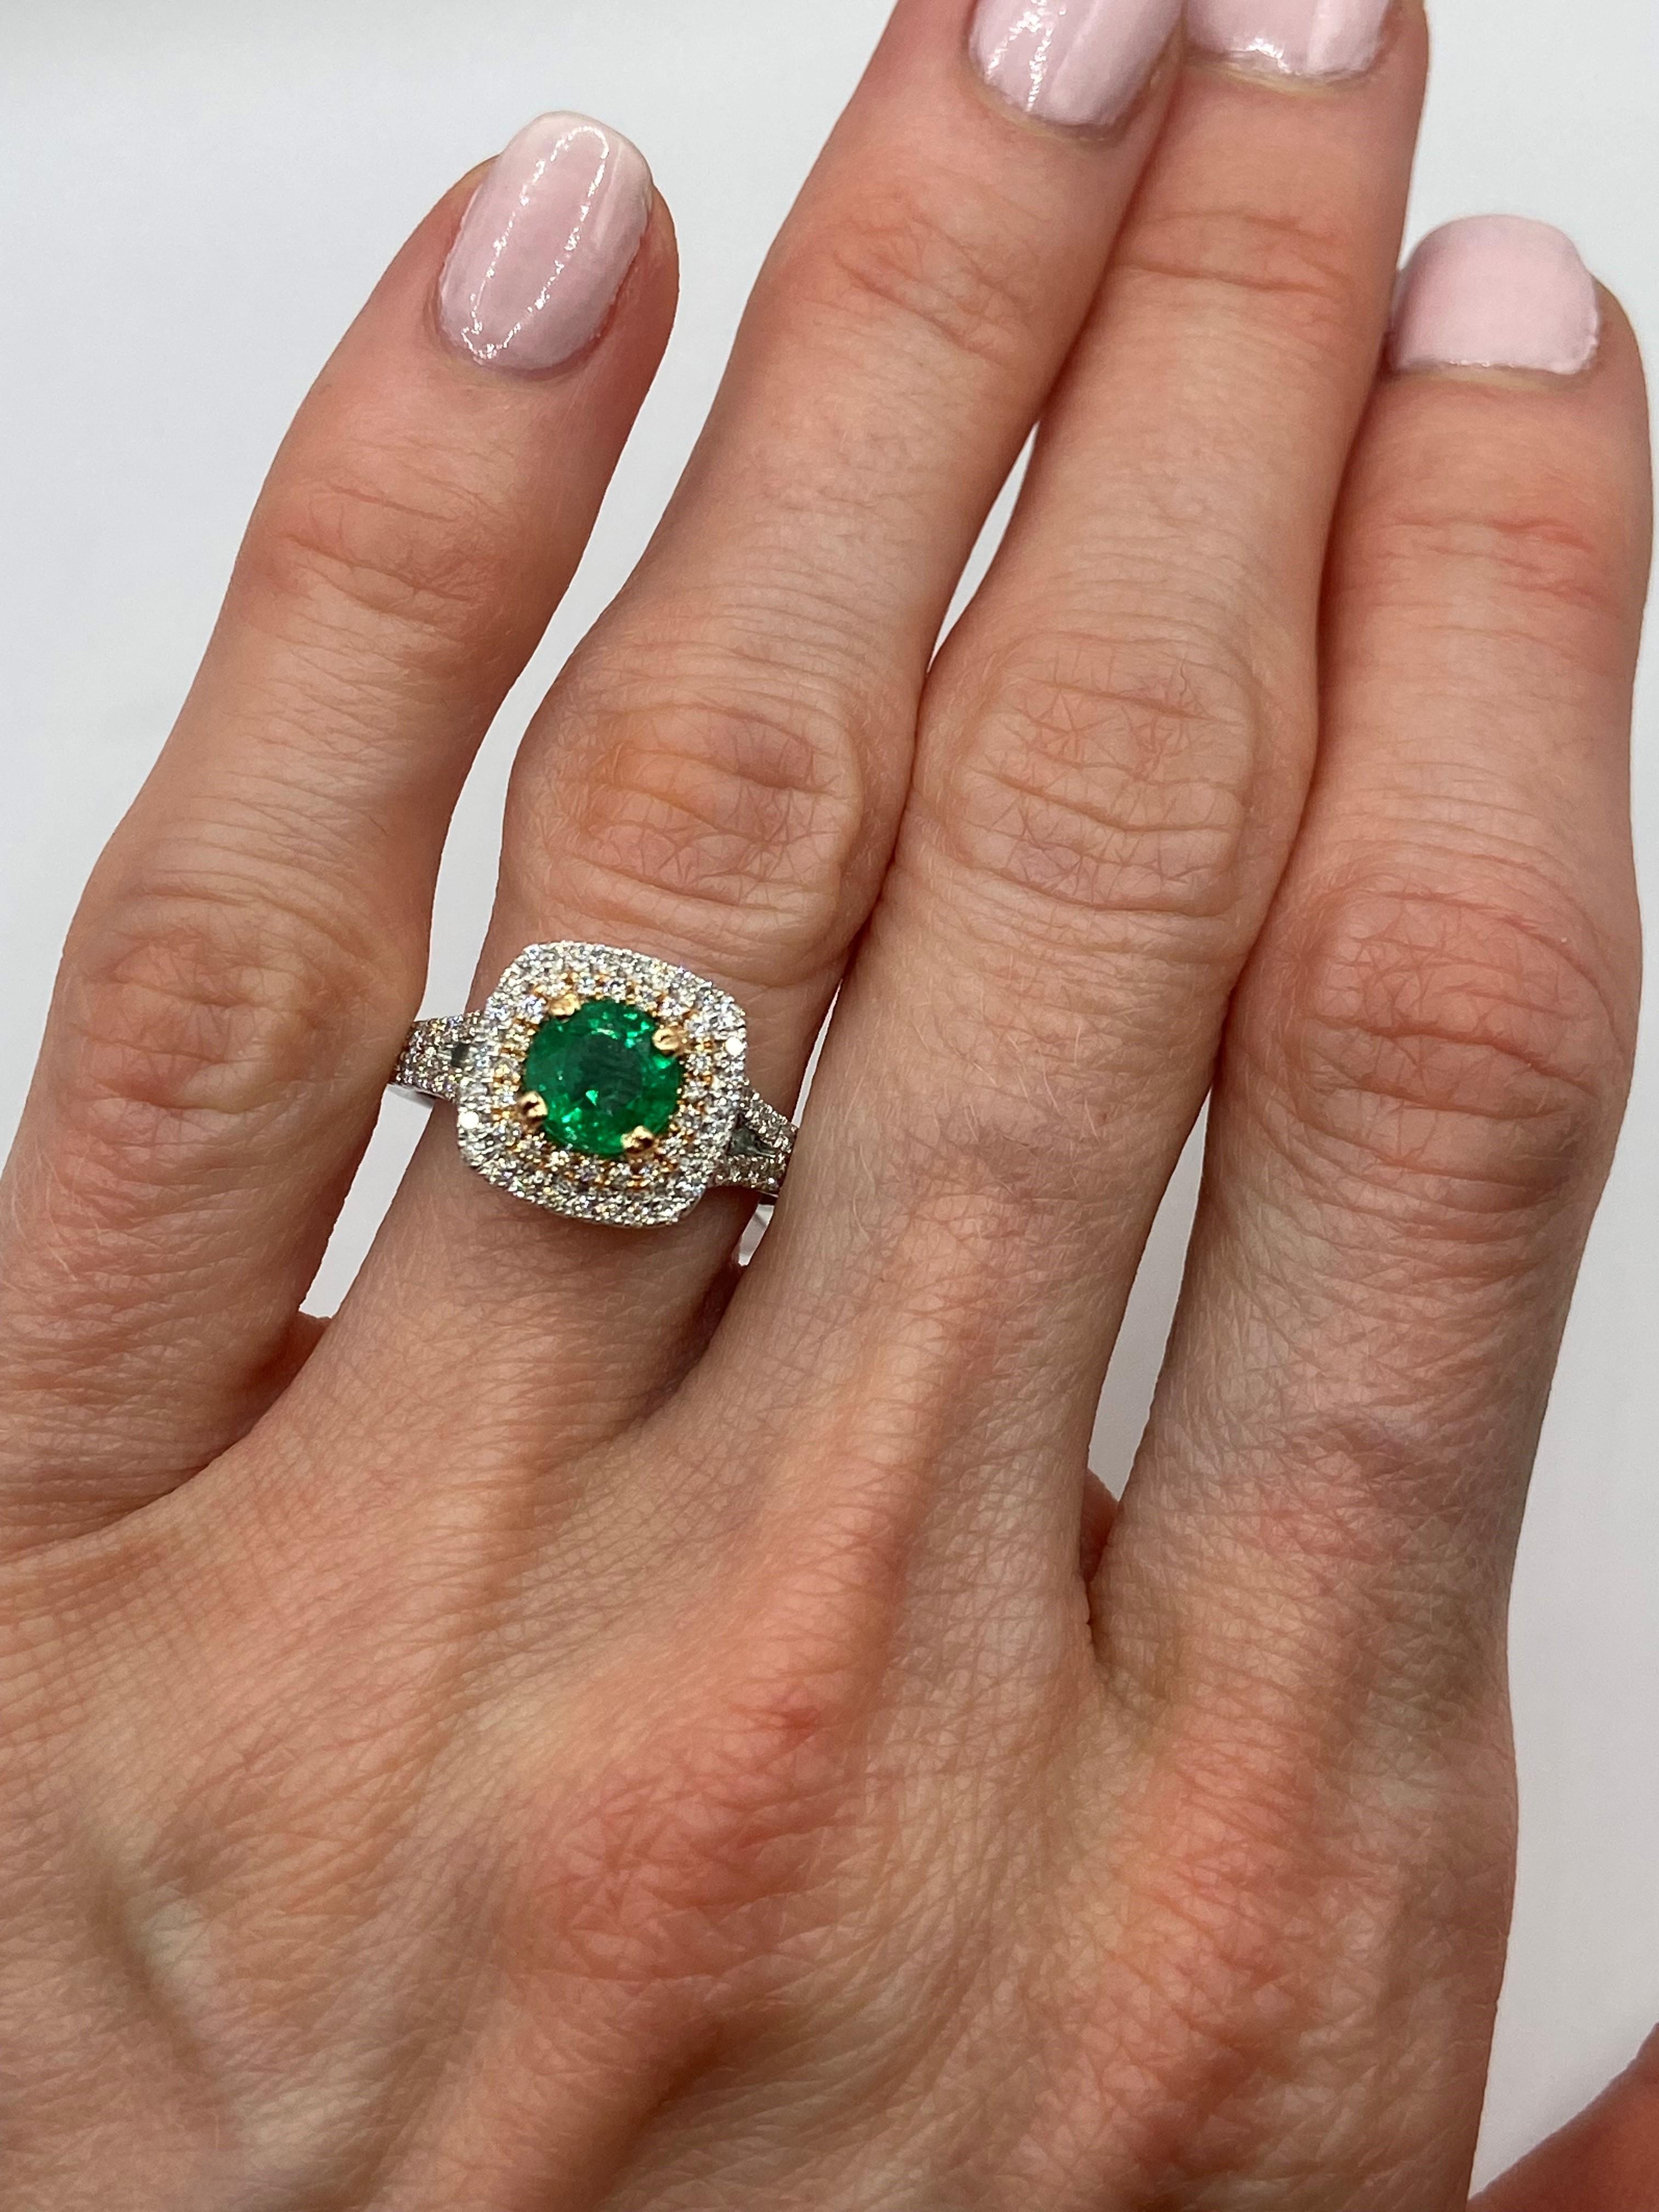 18KT Weiß & Rose Gold
Größe: 6,5

Anzahl der grünen Smaragde: 1
Karatgewicht: 0,90ctw
Steingröße: 6mm
Farbe: Hellgrün

Runde Diamanten: 0.62ctw

Dieser wunderschöne Ring zeigt einen hellgrünen Smaragd als Mittelstein. Der Stein wiegt 0,90 Karat und